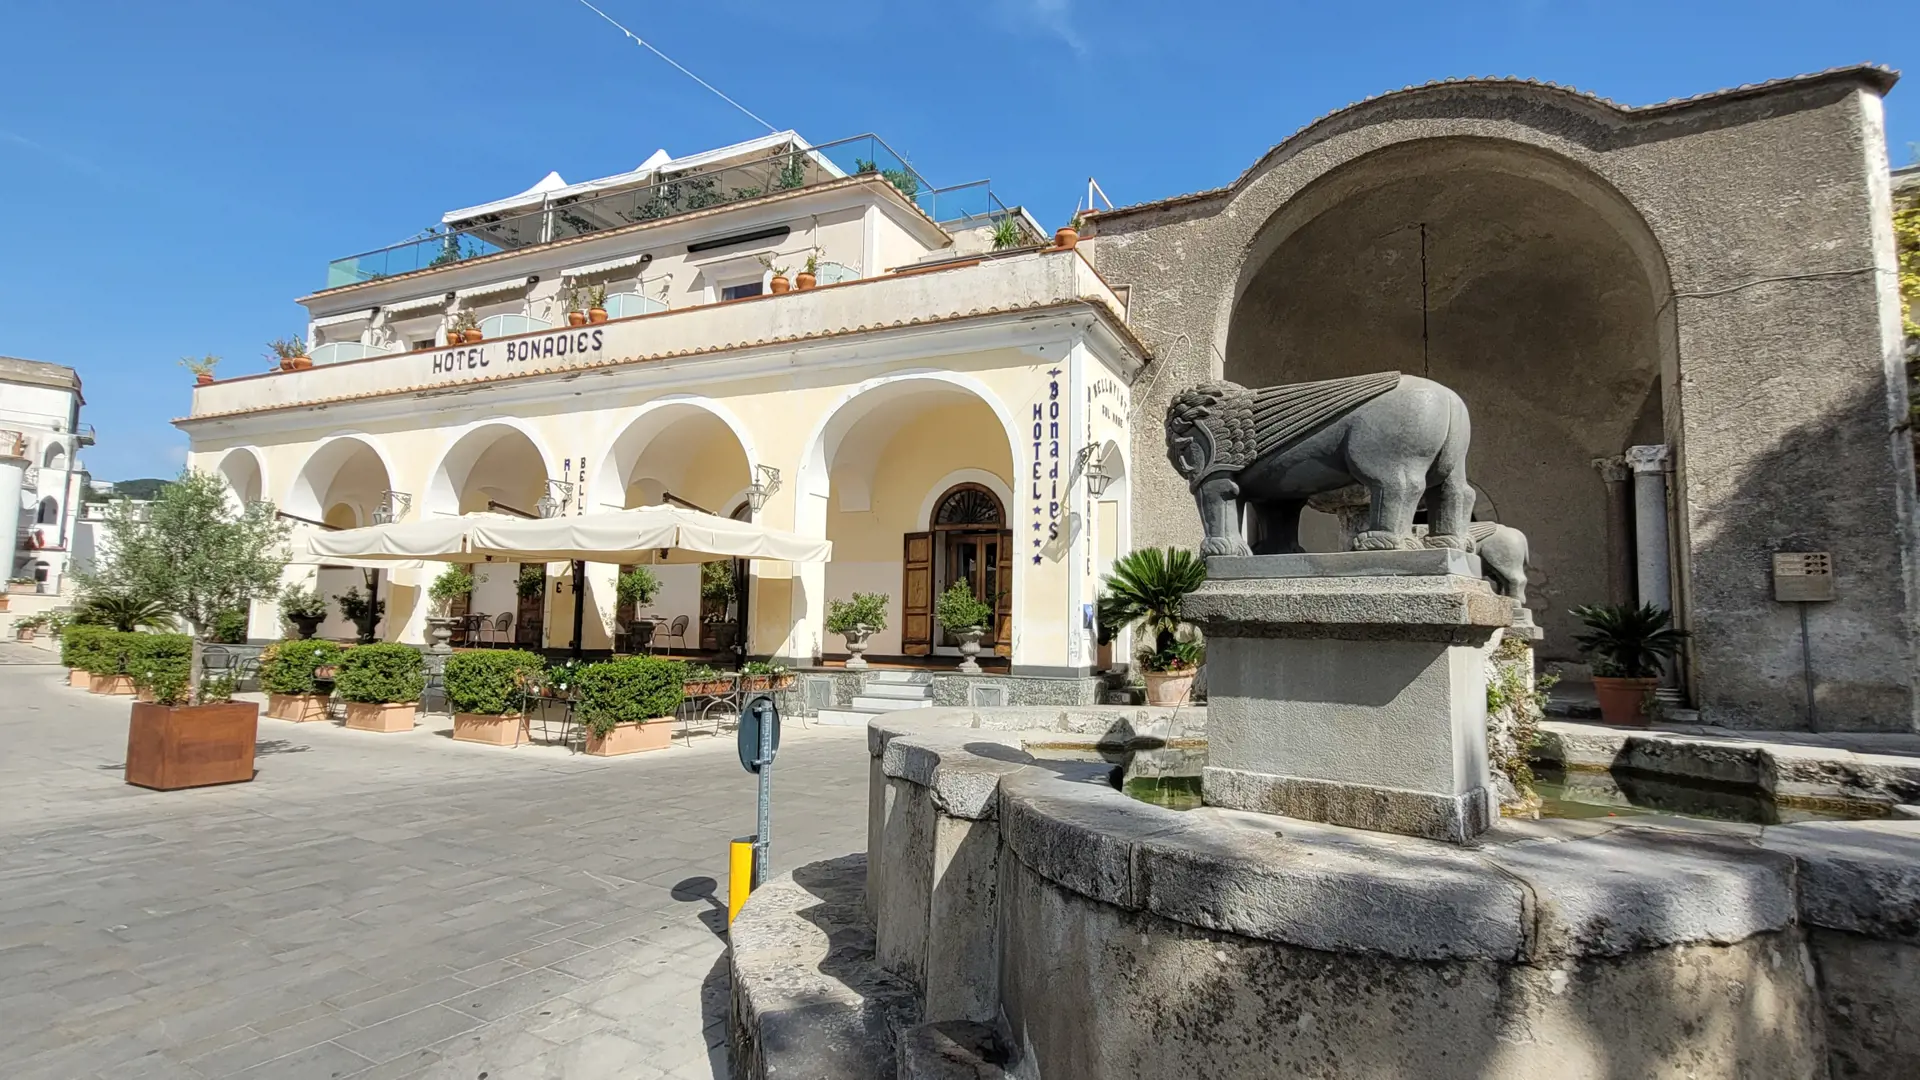 Hotel Bonadies ligger ved en torveplads i Ravello